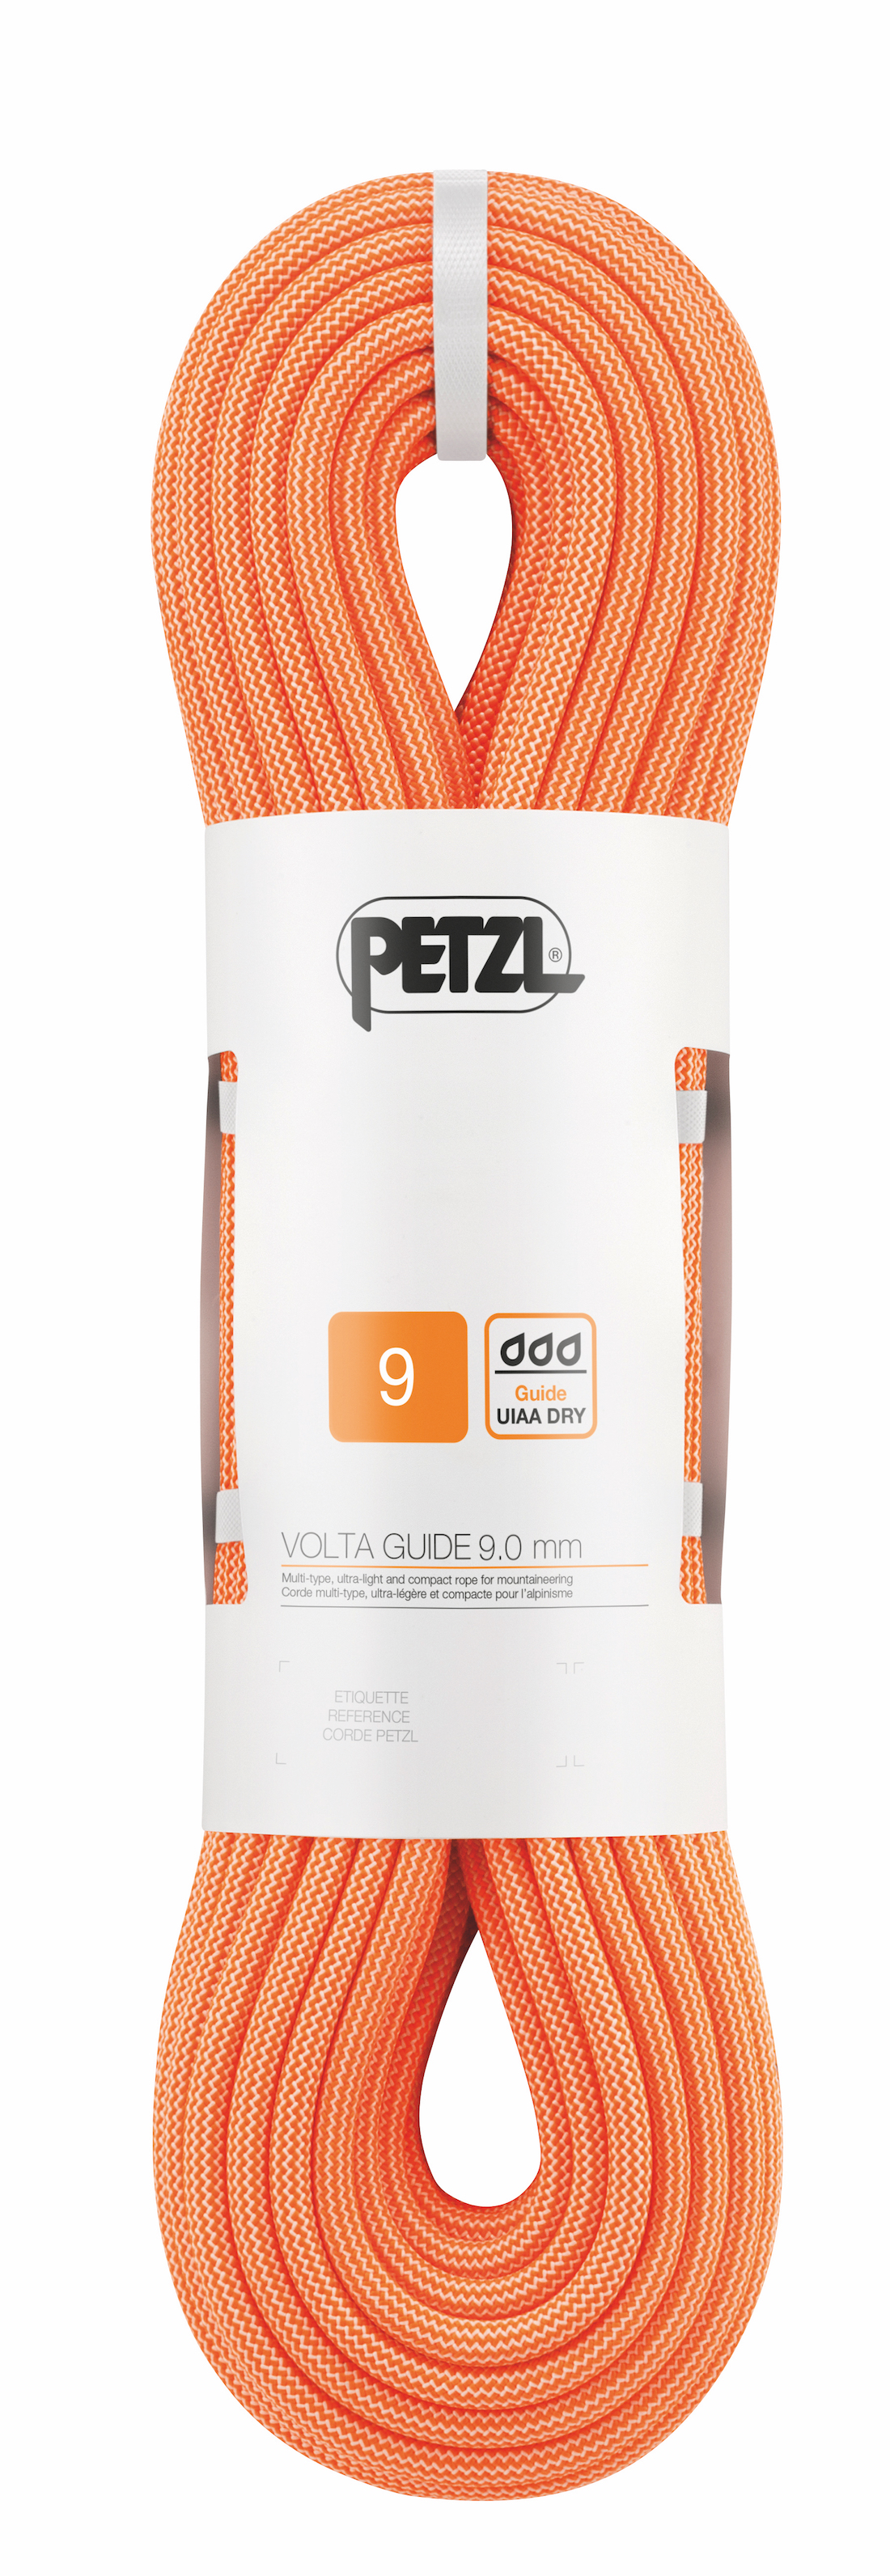 Petzl - Volta Guide 9 mm - Cuerda de escalada